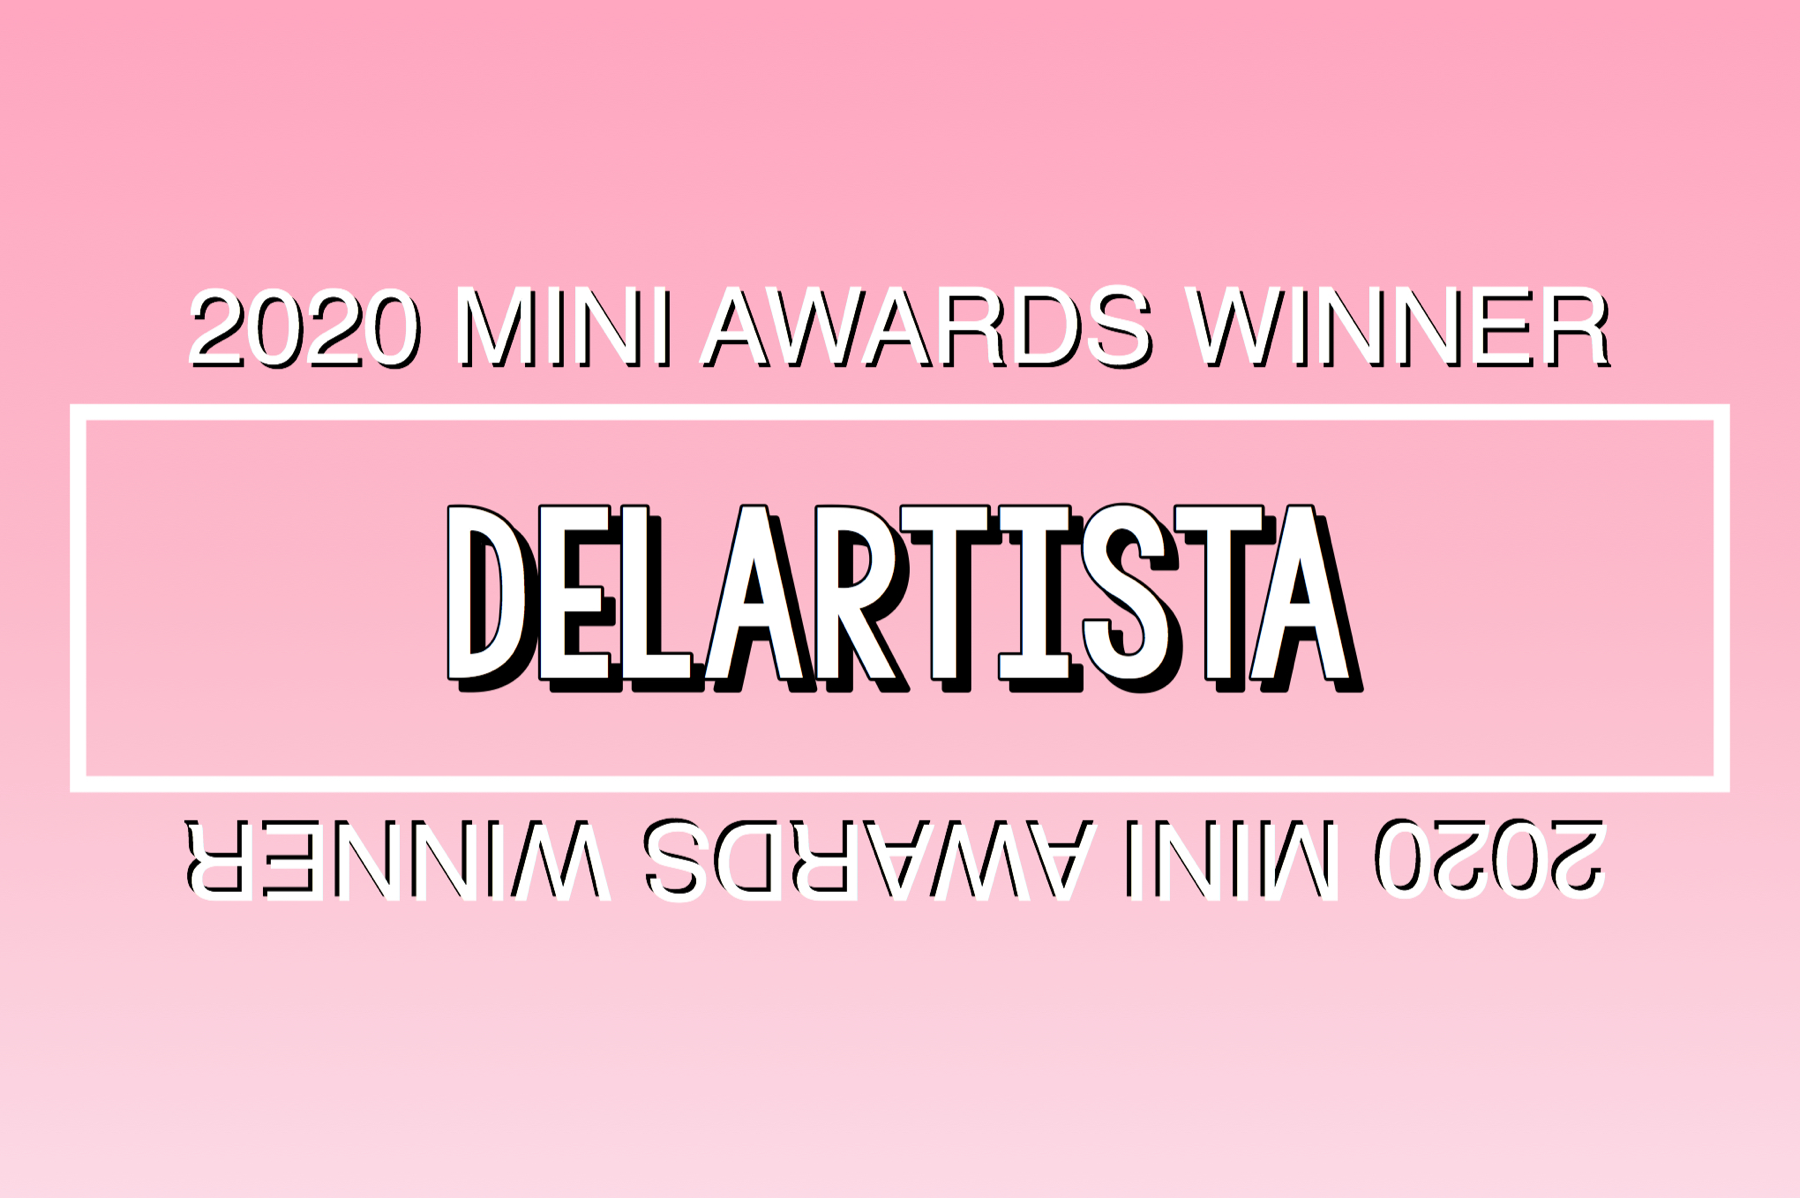 2020 Mini Awards Winner @delartista!